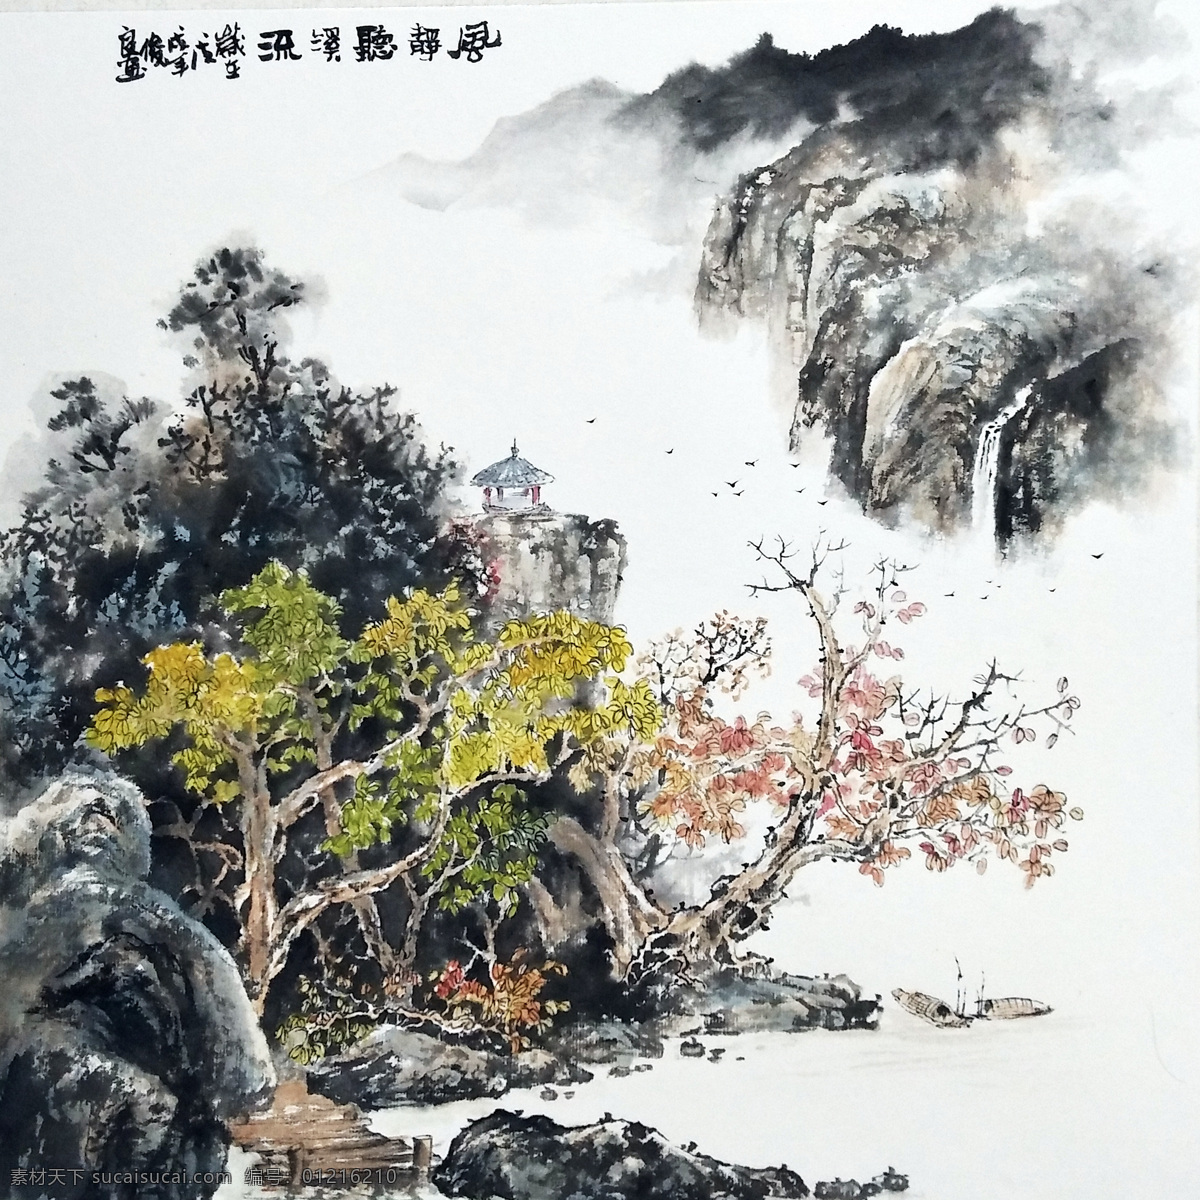 国画 刘 俊良 作品 传统 山水画 中国 风 刘俊良 中国风 文化艺术 绘画书法